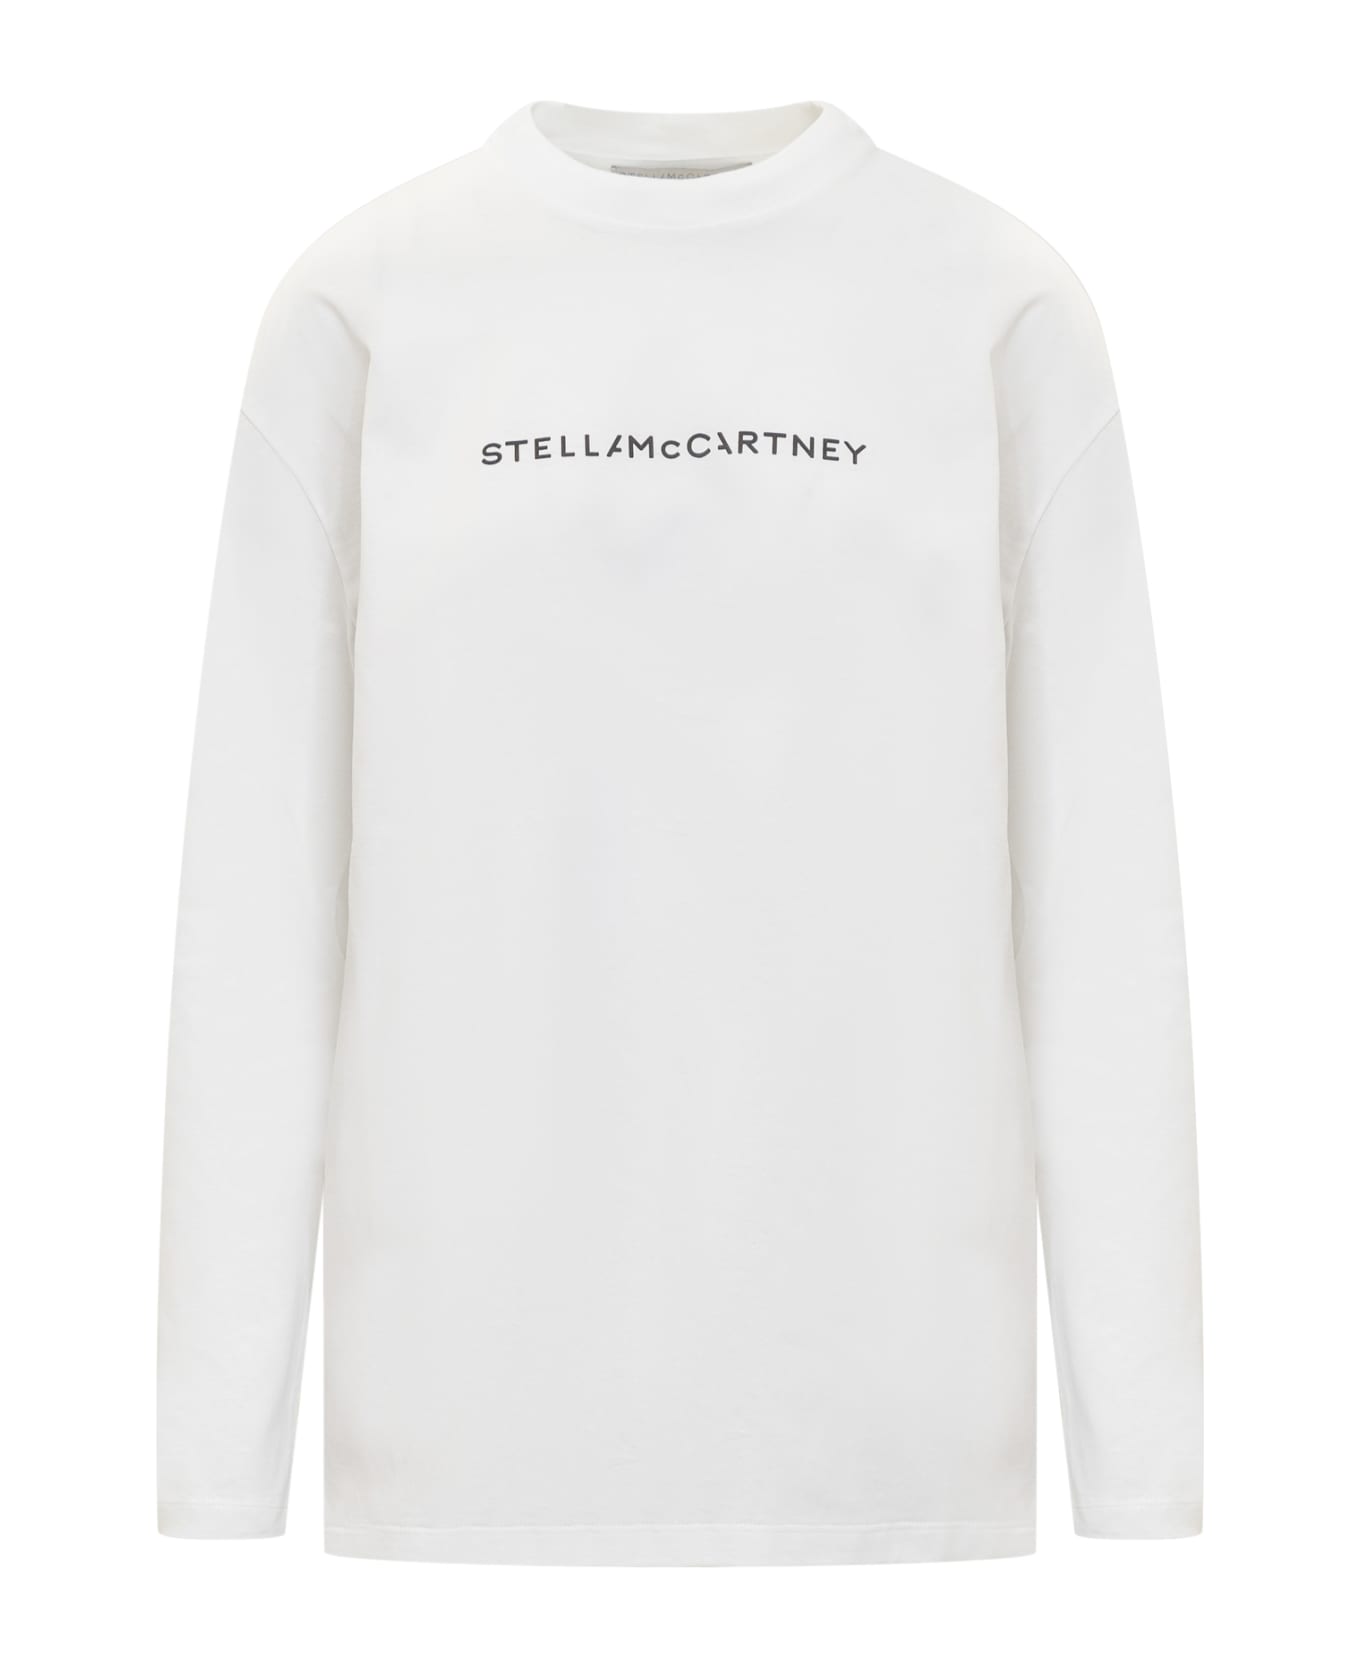 Stella McCartney Iconic Stella Sweatshirt - PURE WHITE フリース